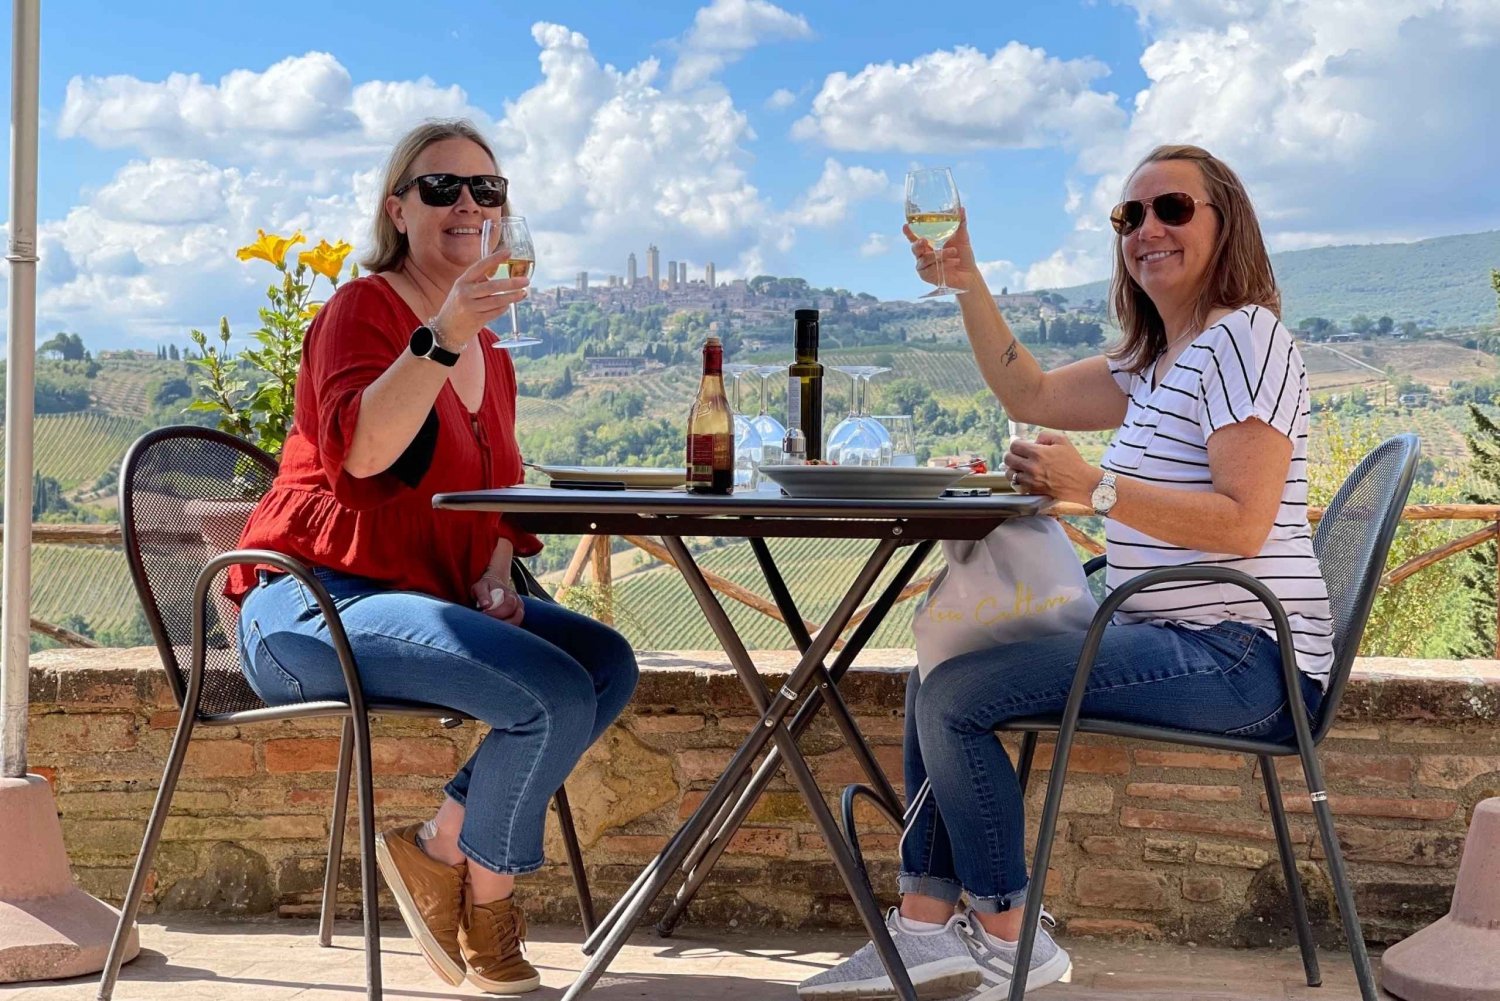 Firenze: Vingårder, smaksprøver, lunsj og dagstur til San Gimignano